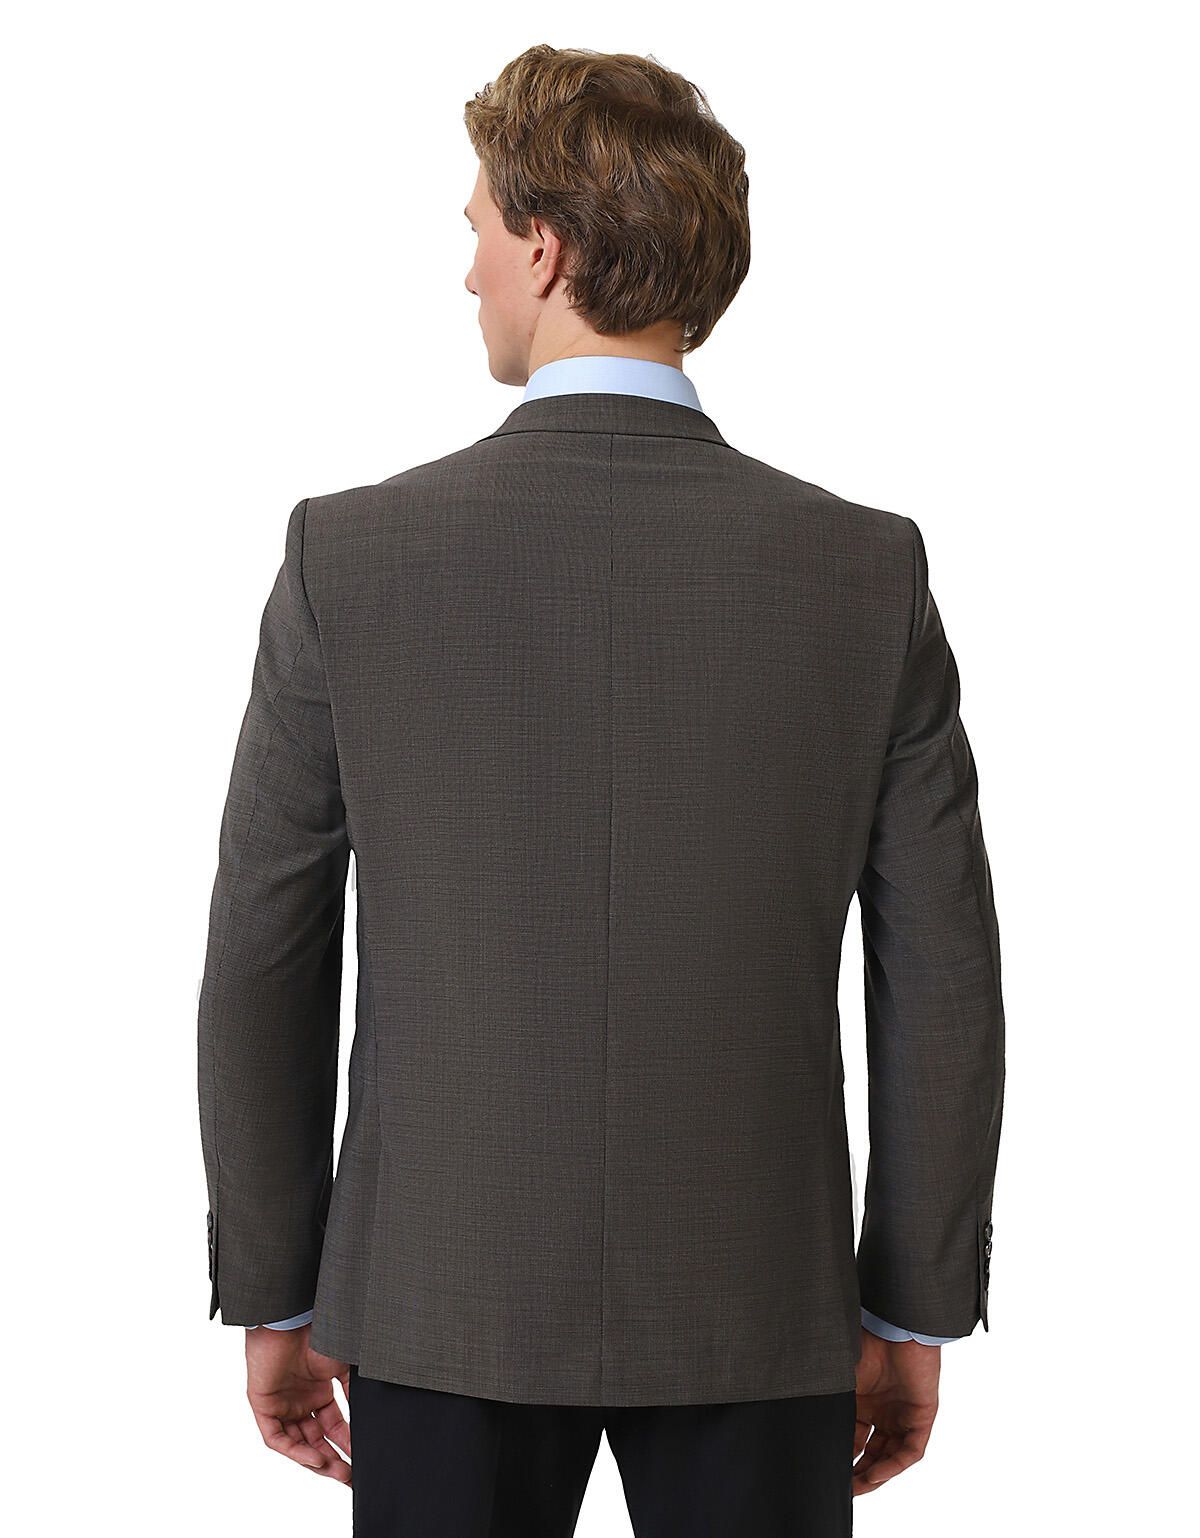 Пиджак мужской w.Wegener из тонкой шерсти, 2 шлицы | купить в интернет-магазине Olymp-Men